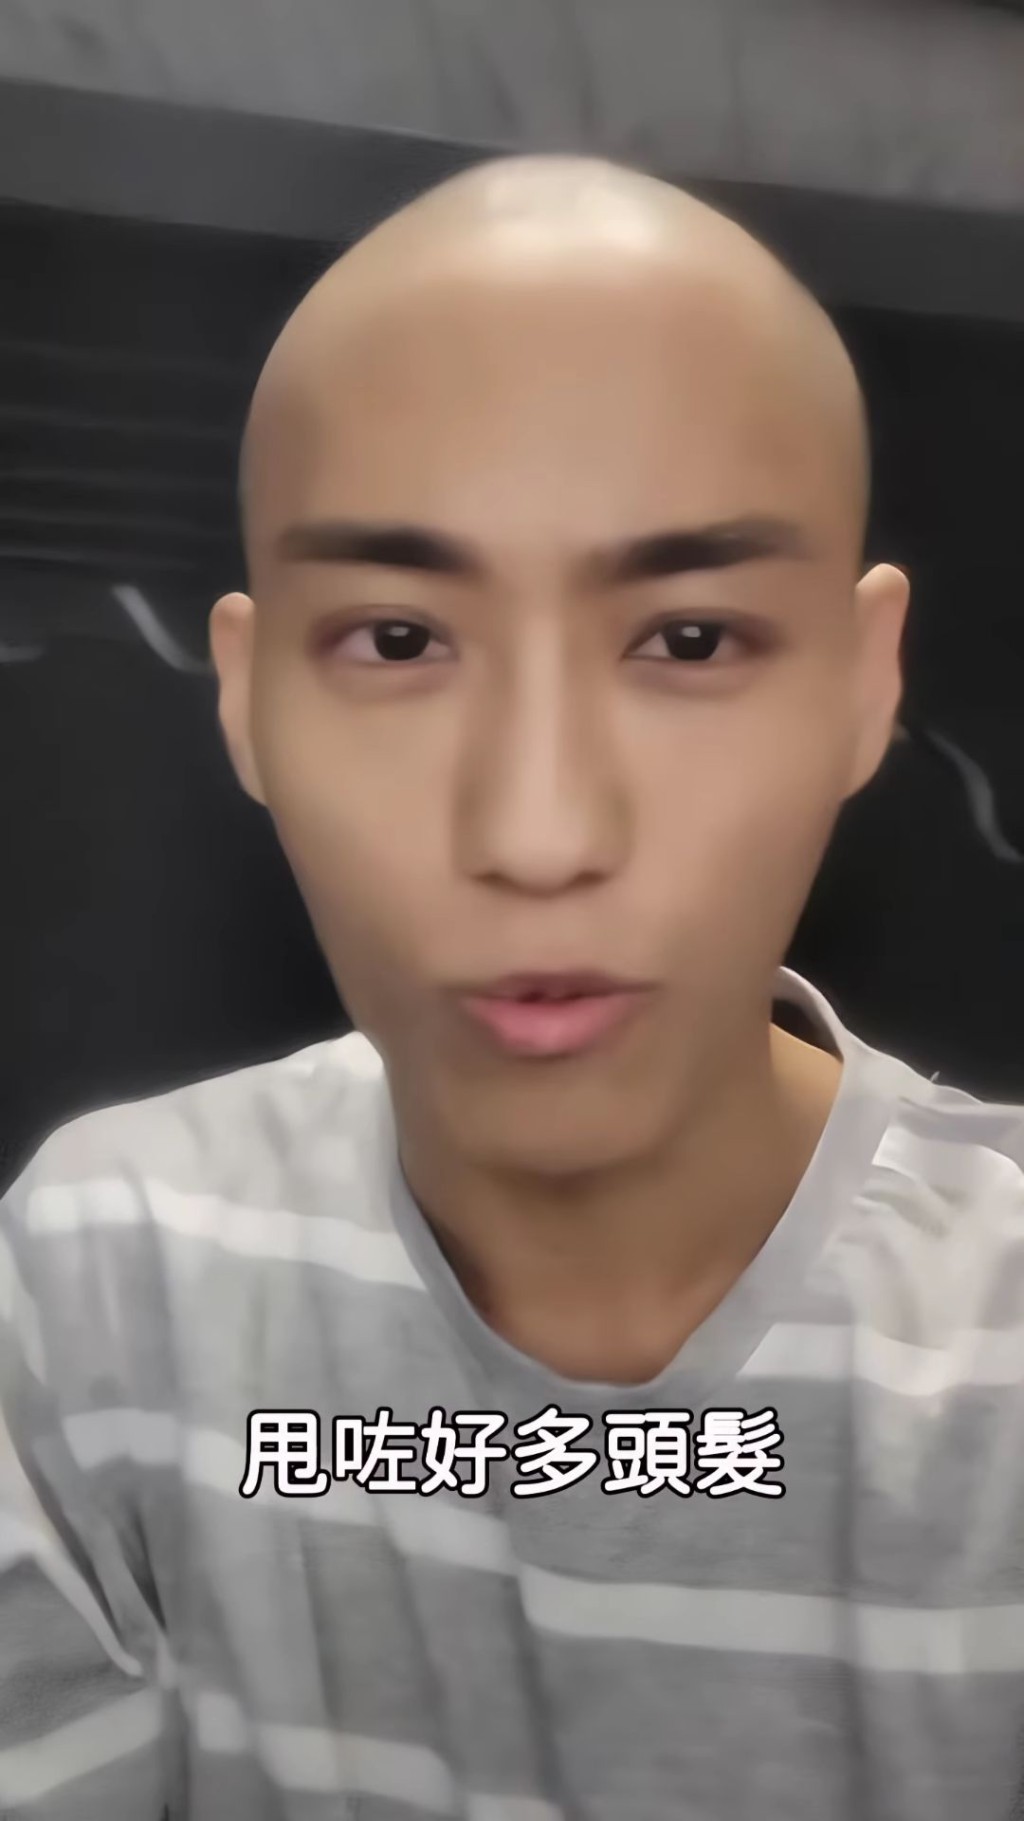 文頌男23日上載的「癌病日記」影片中，可見他已剃光頭髮。